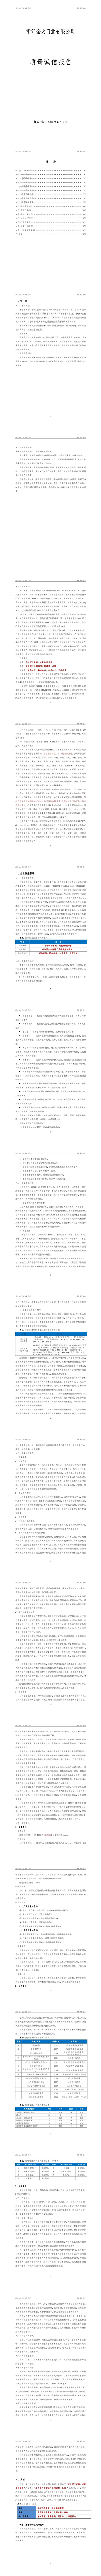 浙江金大门业有限公司2019年度质量诚信报告  (图1)